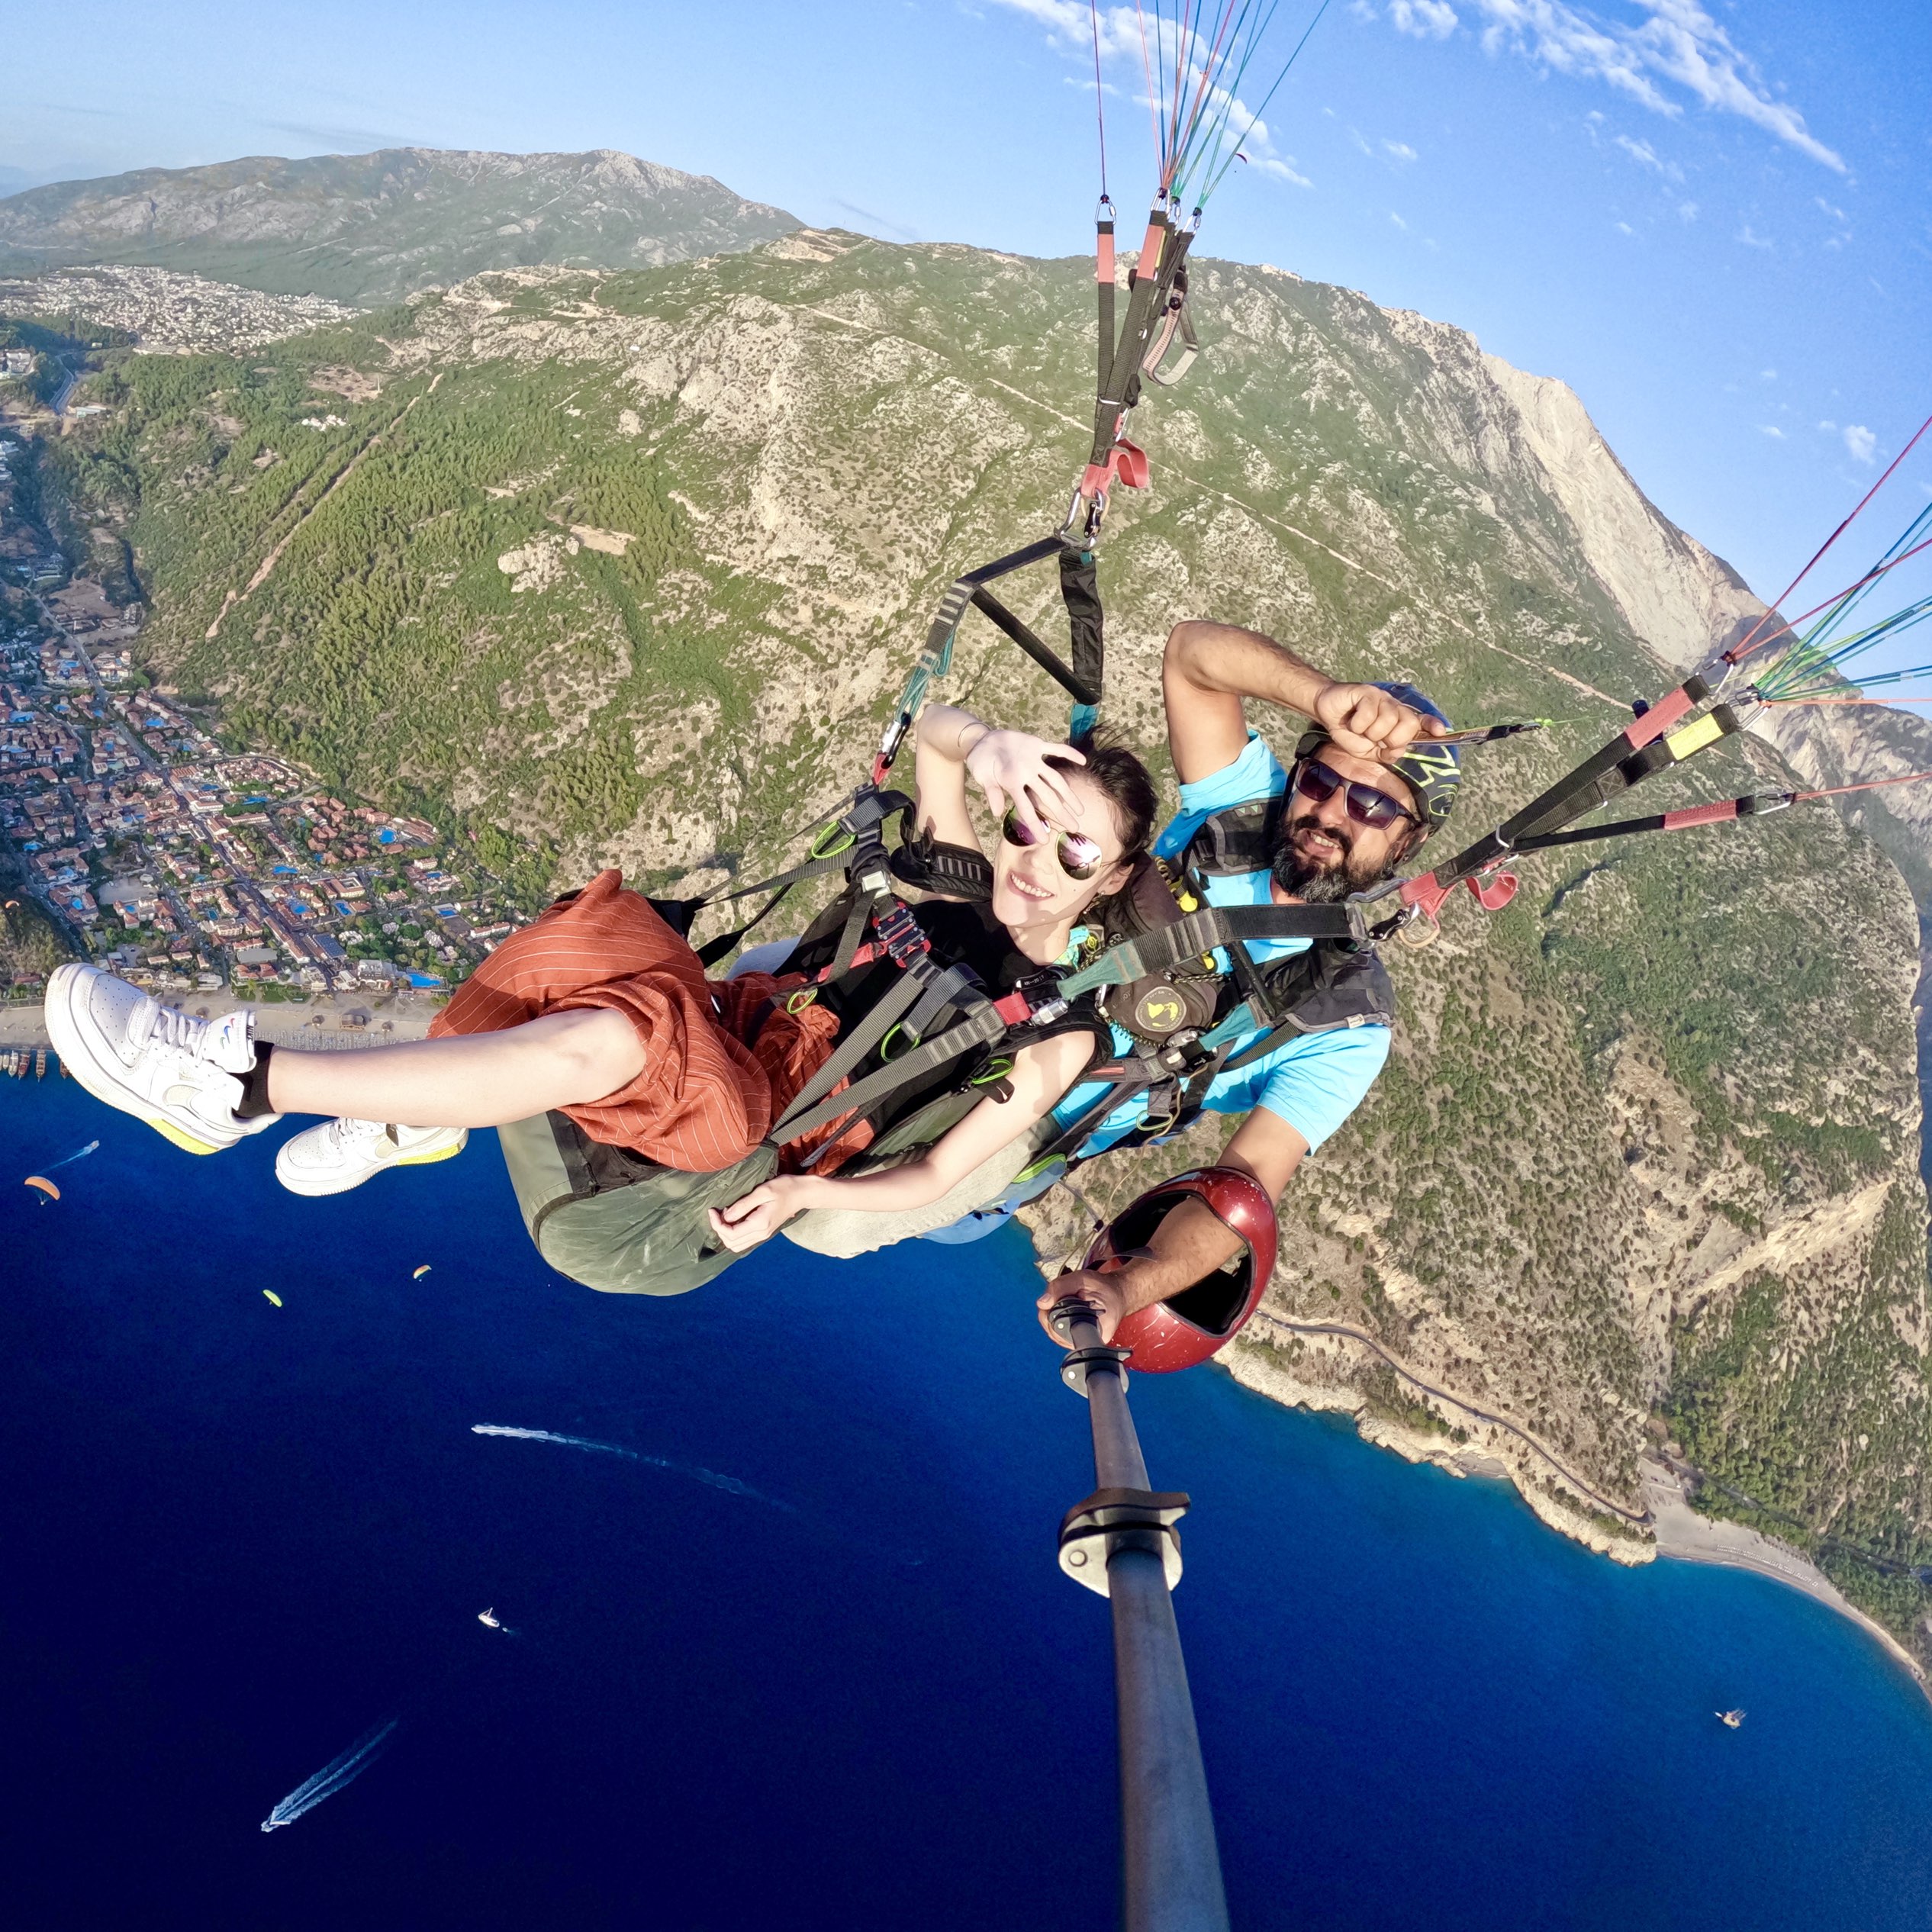 土耳其游记 Fethiye 超好玩美景的滑翔伞体验